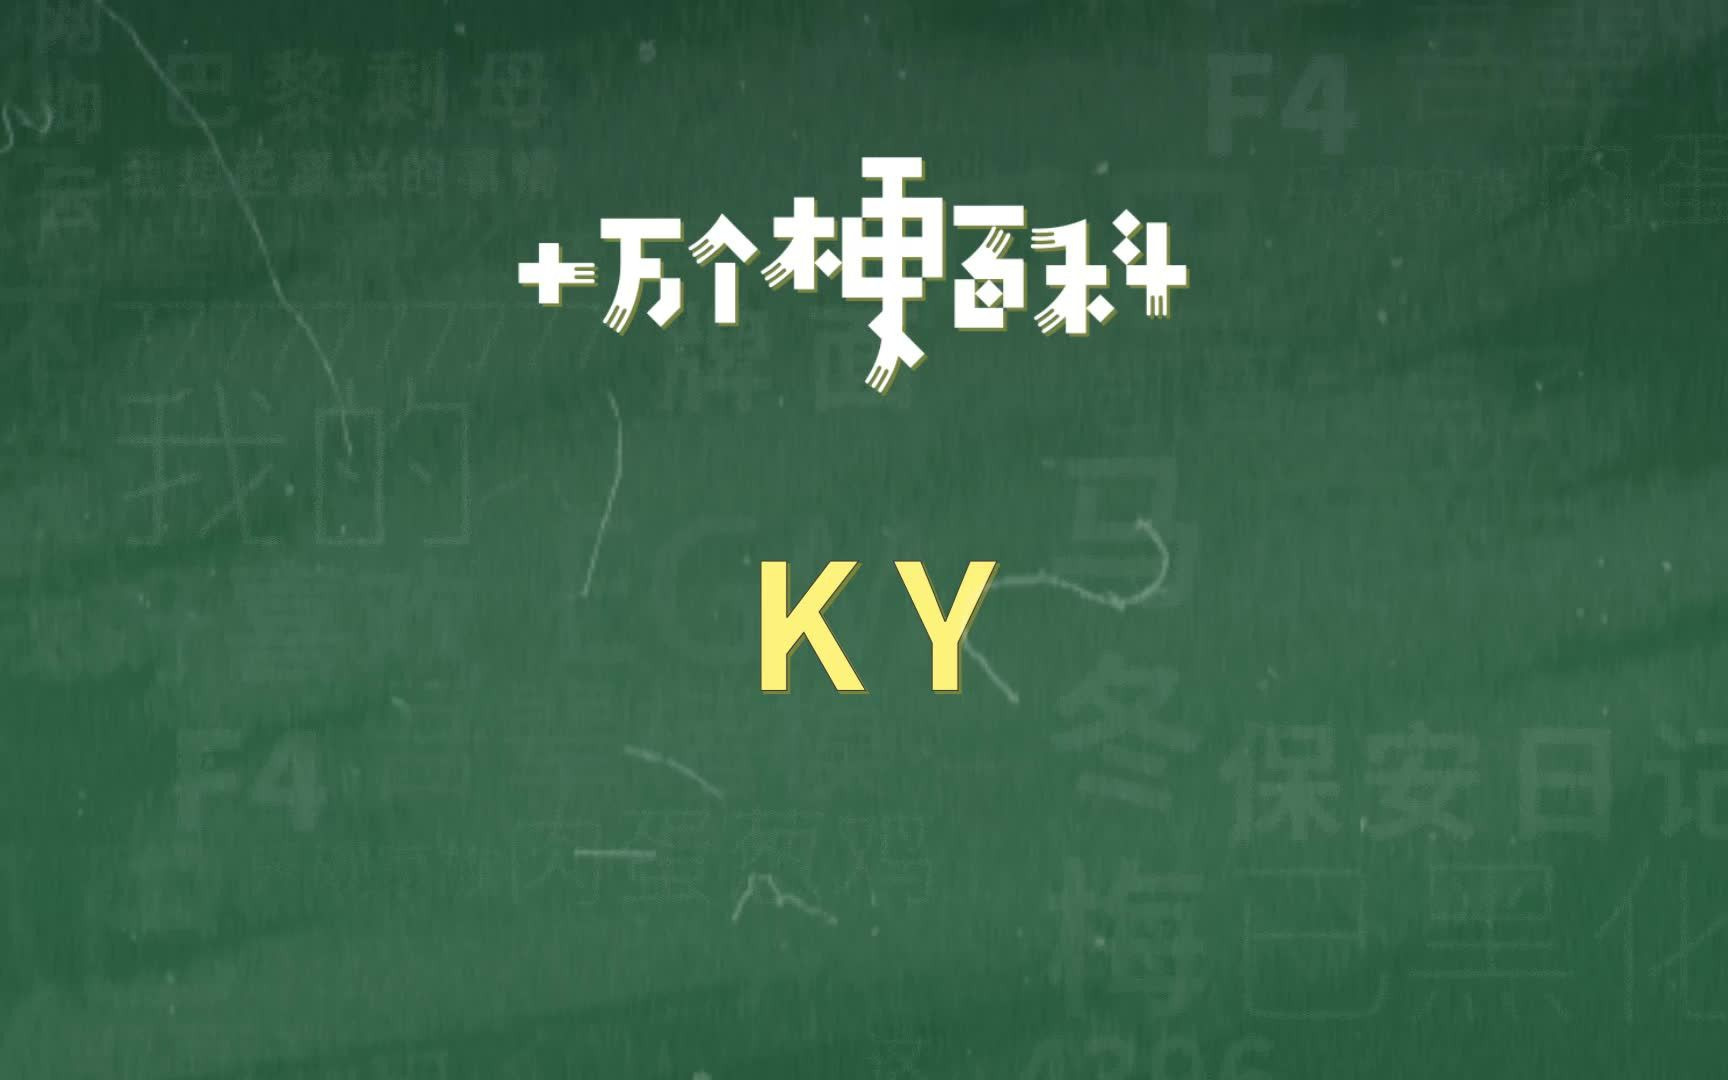 【KY】拒绝“ky”行为。